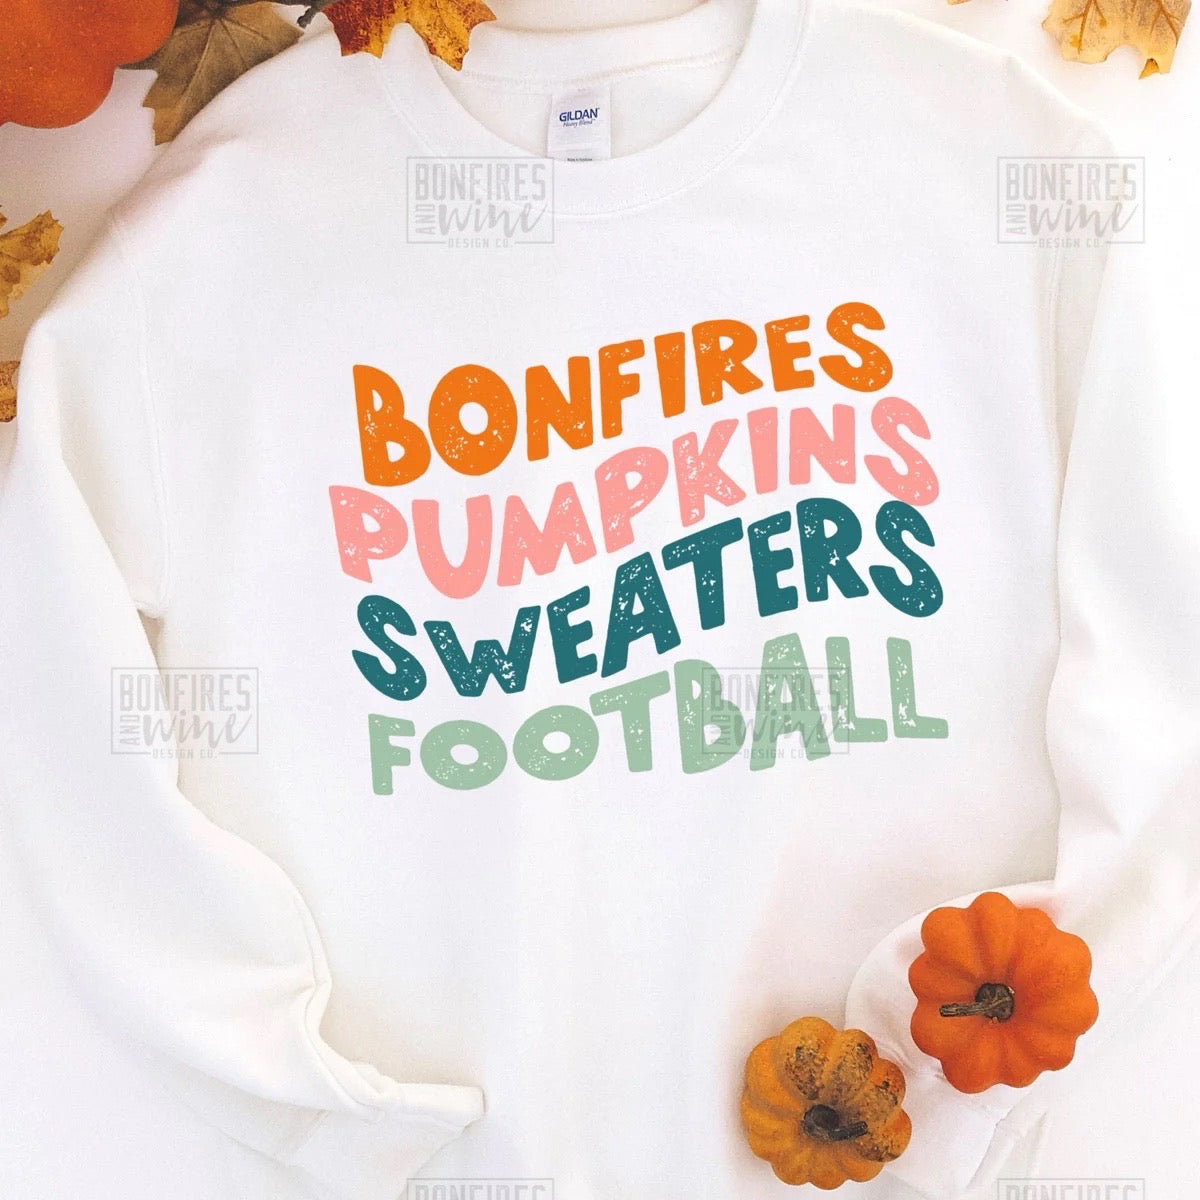 Bonfires, pumpkins, sweaters, football